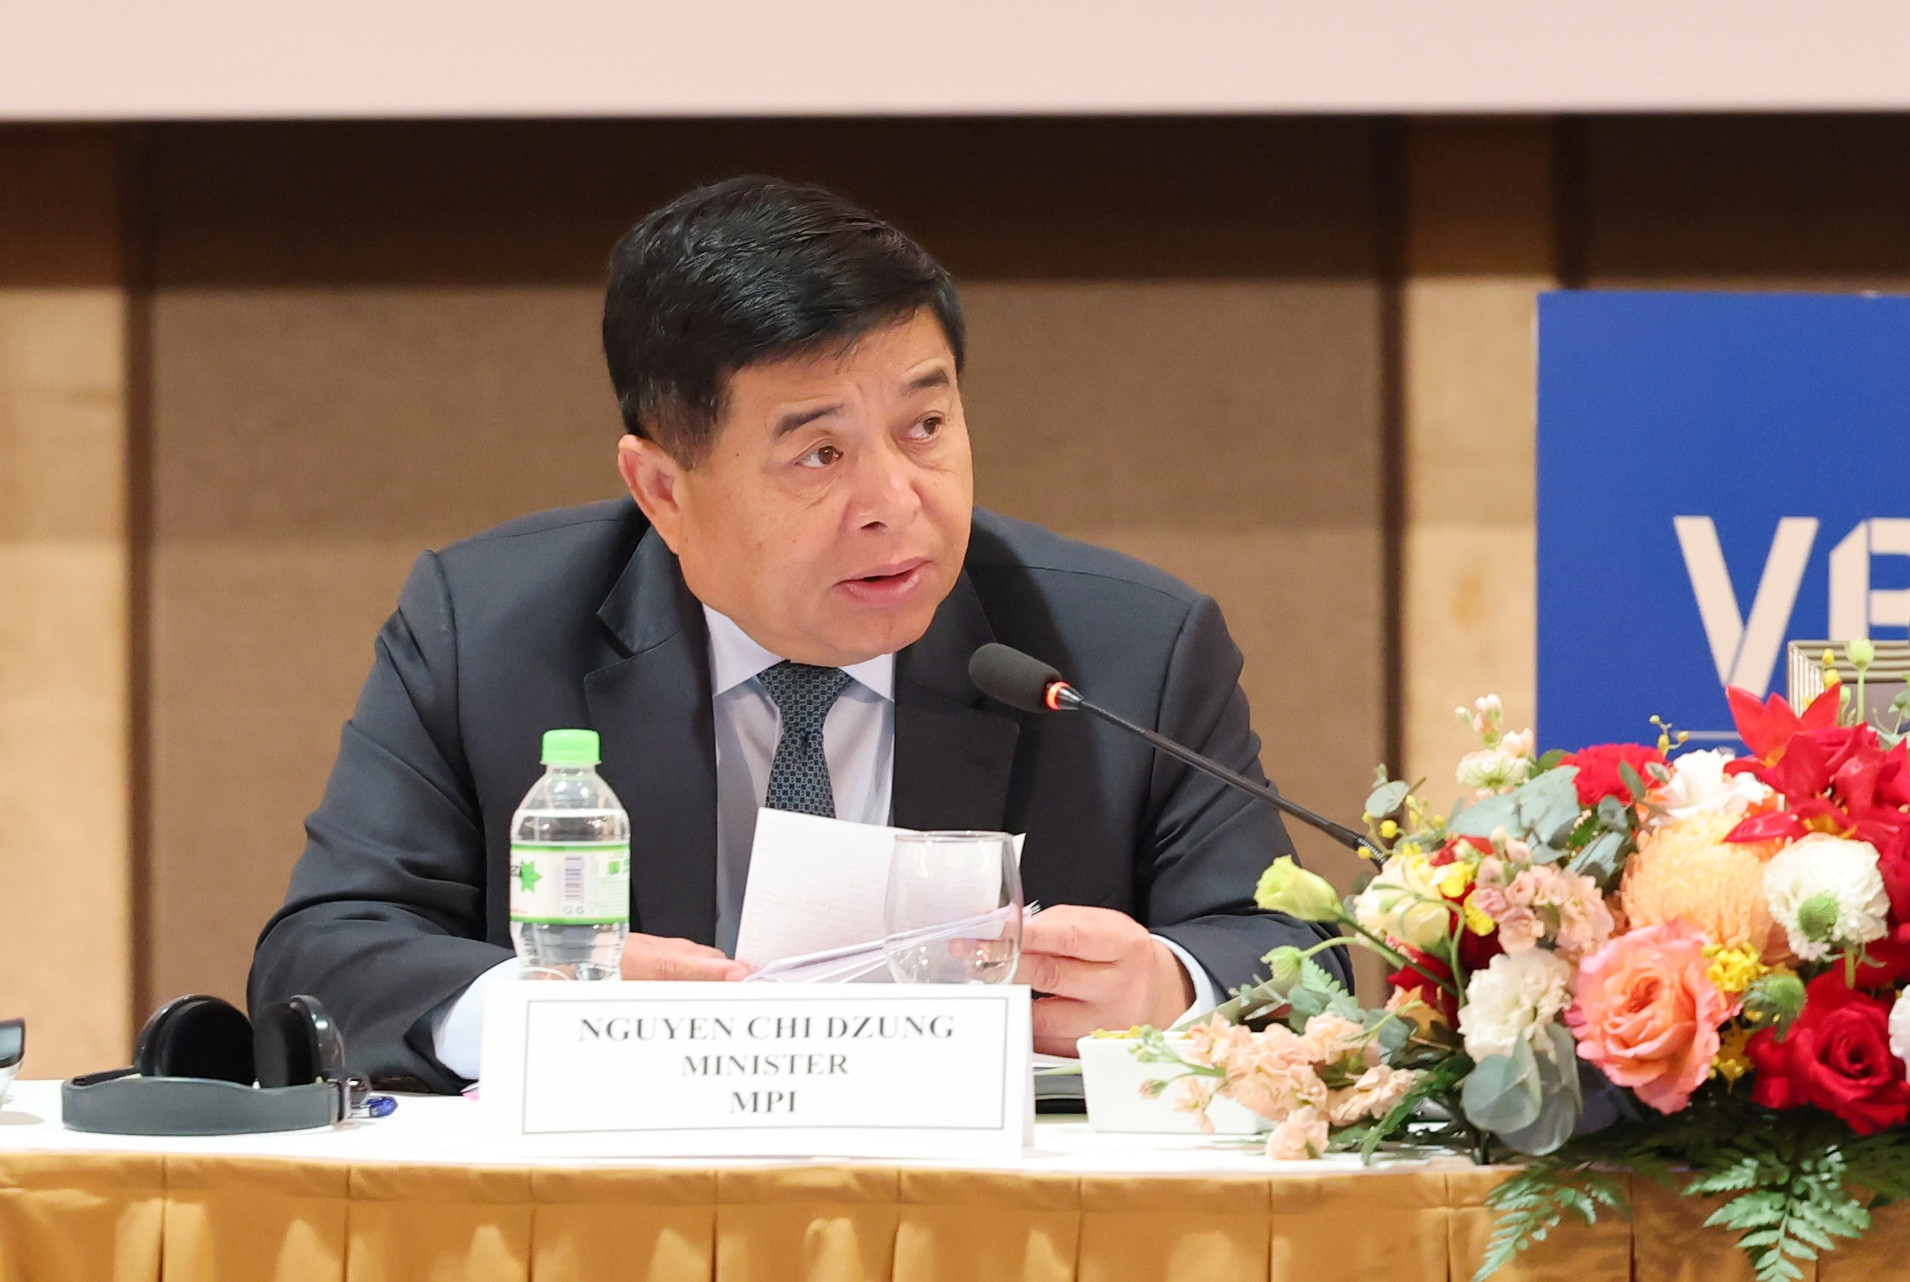 Bộ trưởng Bộ Kế hoạch và Đầu tư Nguyễn Chí Dũng cho rằng tăng trưởng xanh là chìa khóa đảm bảo cho việc thực hiện Chiến lược phát triển kinh tế - xã hội 2021-2030 của Việt Nam.